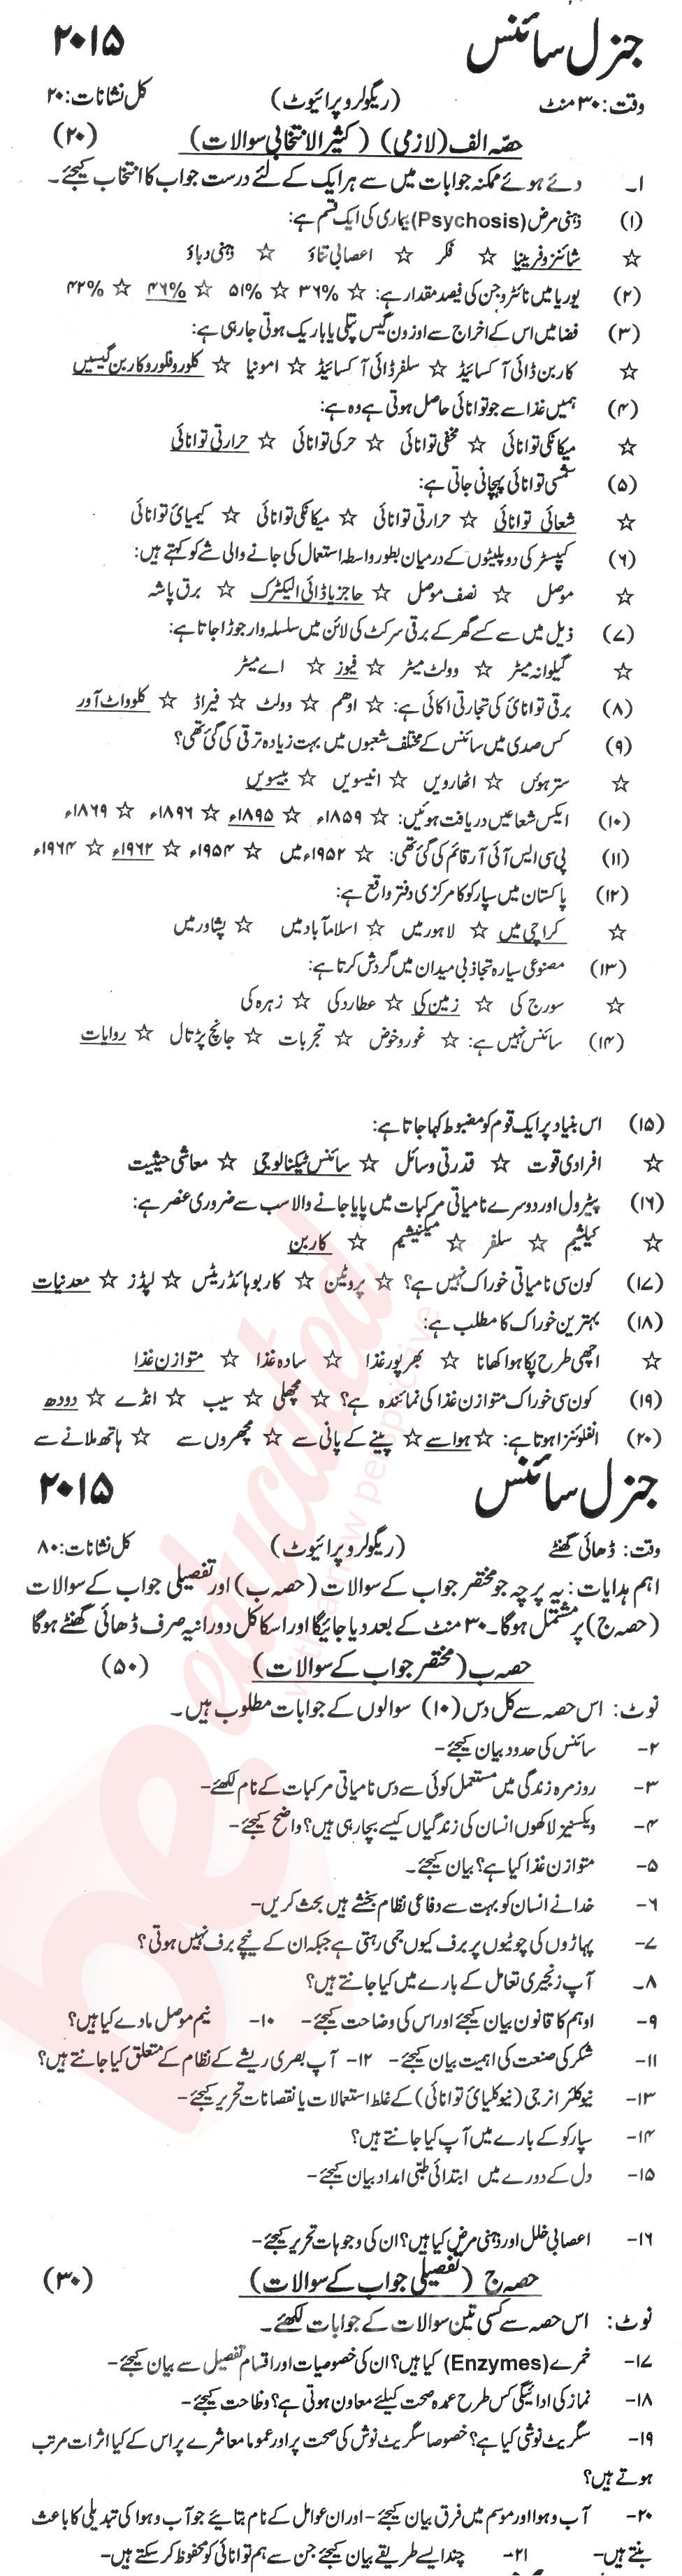 General Science 9th Urdu Medium Past Paper Group 1 KPBTE 2015